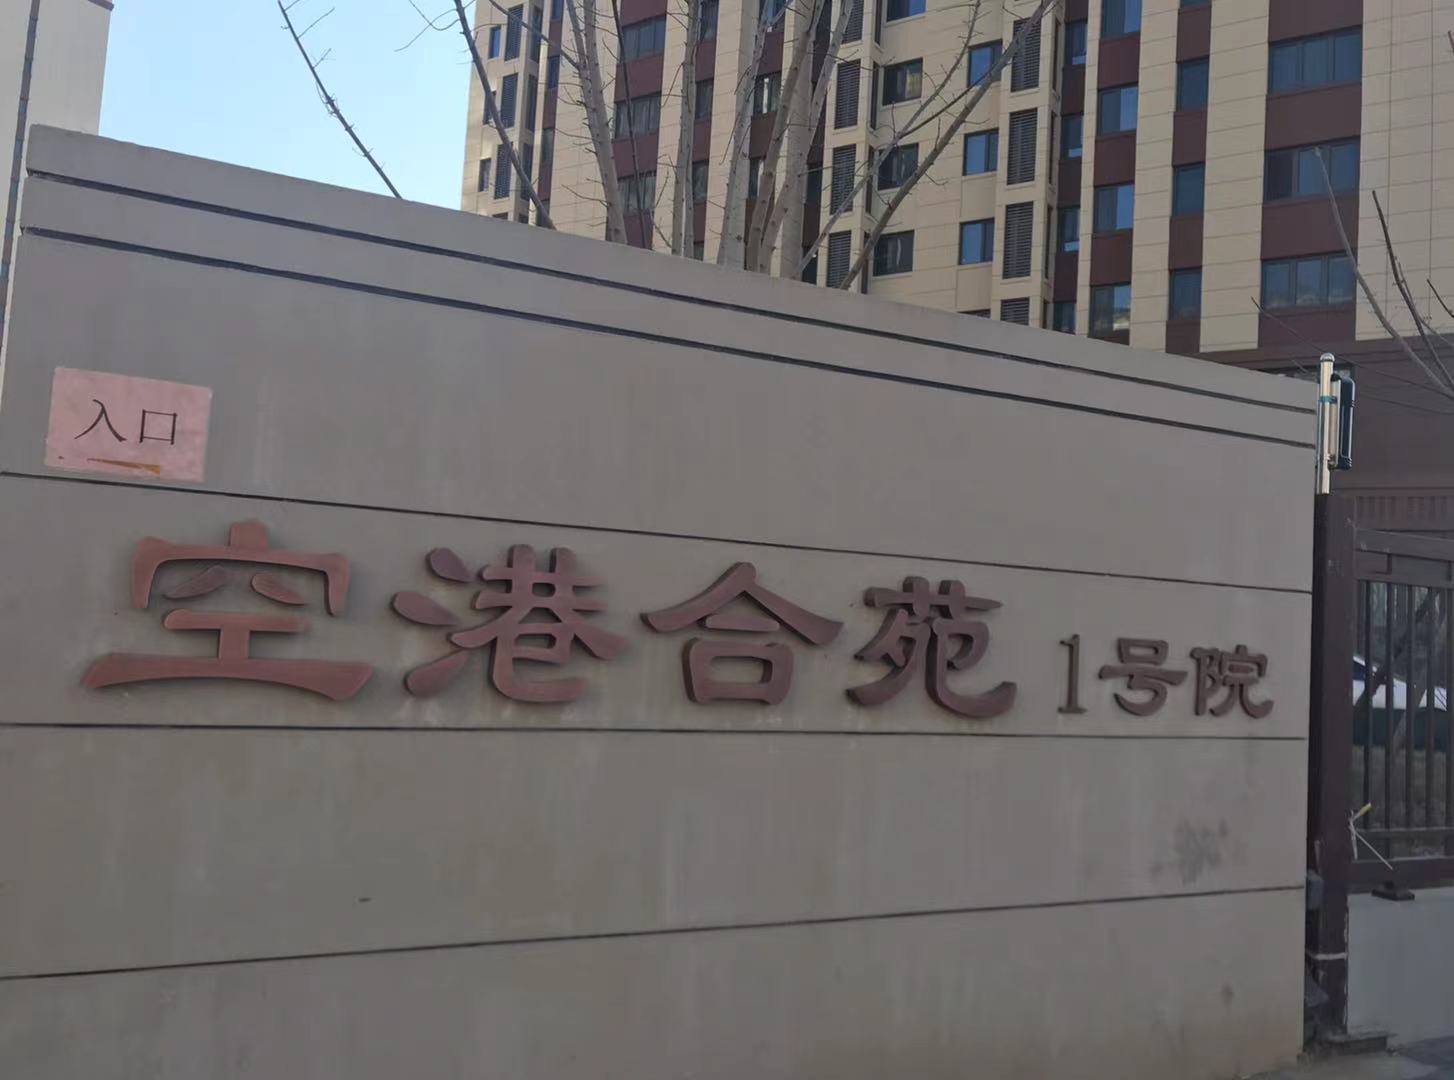 北京市大兴区康泰街与榆泰路交叉路口往北约90米